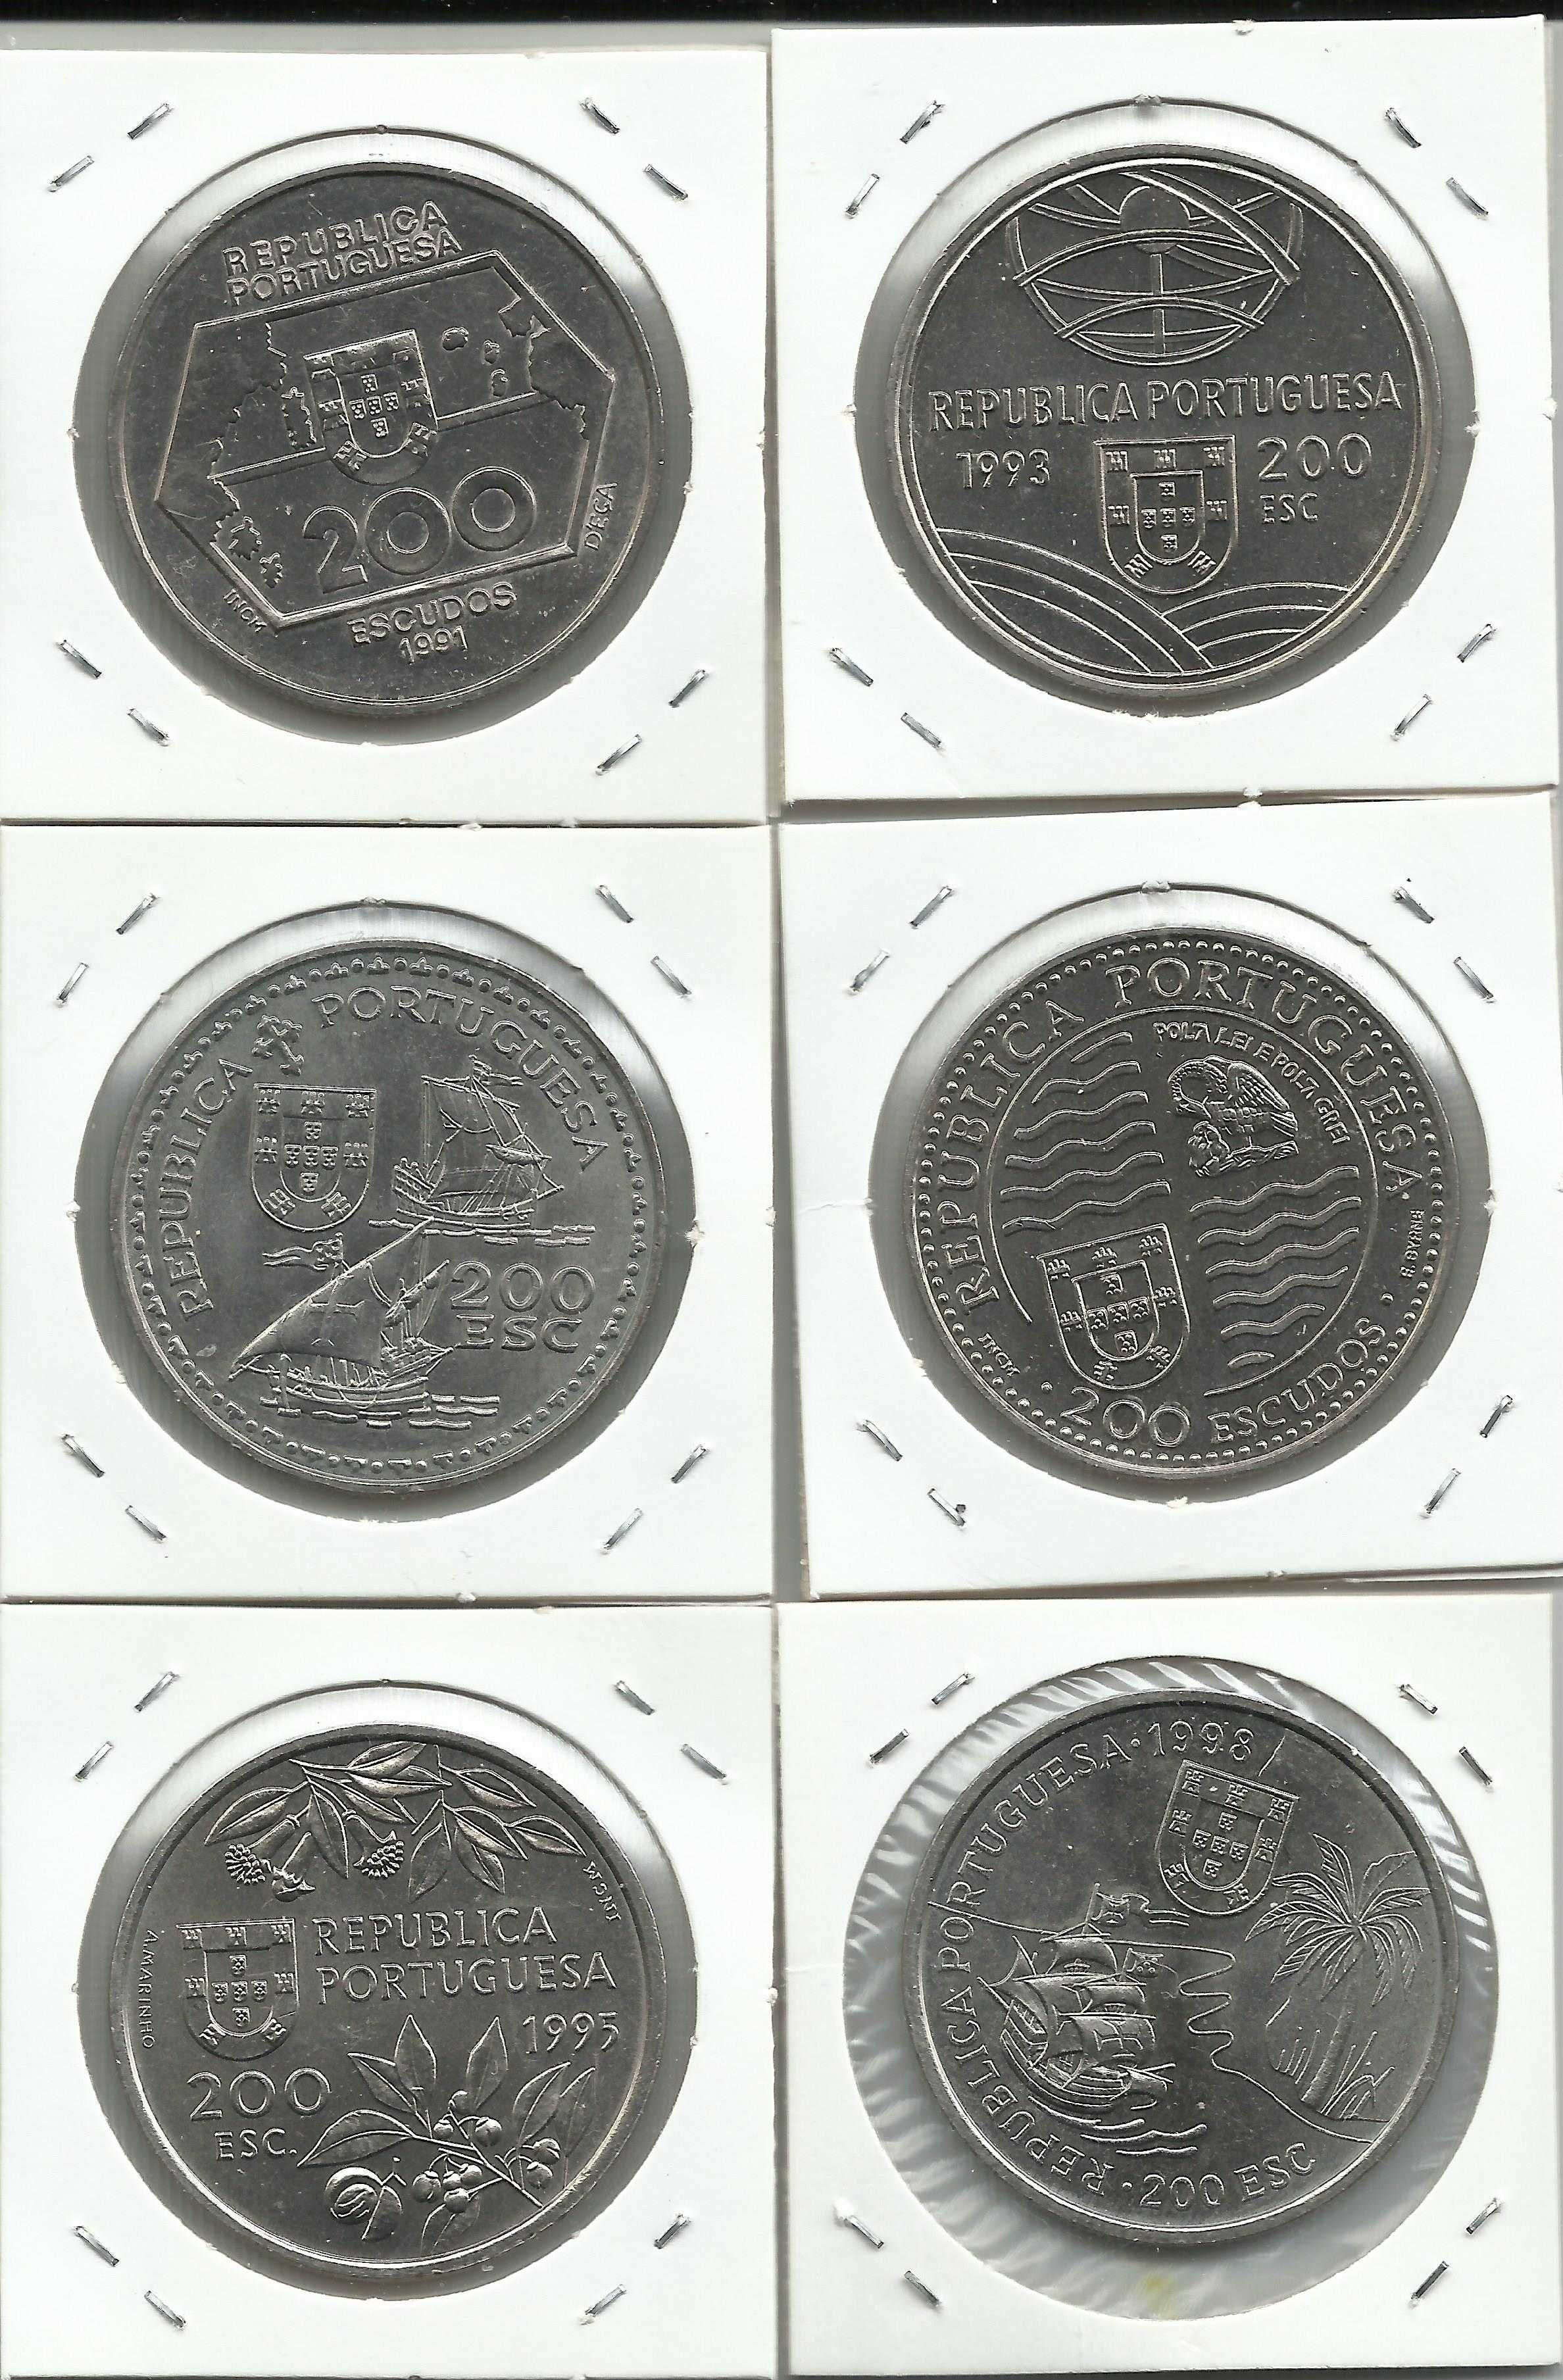 6 moedas portuguesas comemorativas de 200$00 em Cupro-Níquel